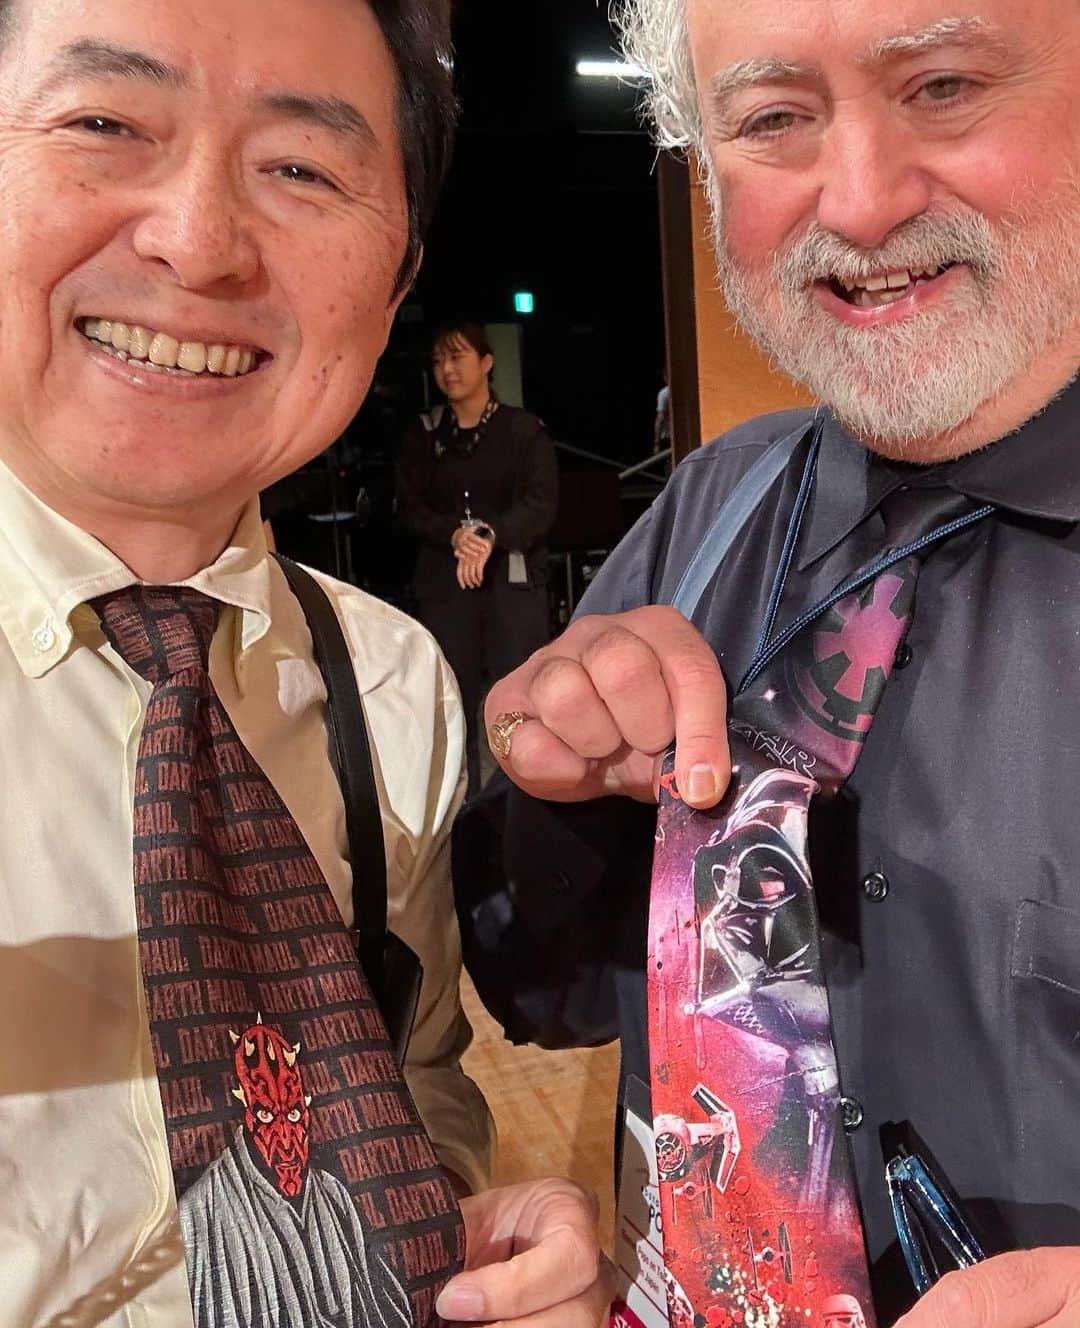 笠井信輔のインスタグラム：「20年ぶりに日本で来日公演を行ったアメリカ🇺🇸のボストン·ポップス·オーケストラ  5000人を集めた東京国際フォーラムAで司会を務めました   昨日の公演はスター・ウォーズ・サーガ特集です  ボストンポップスで、15年にわたって指揮者を務めてきた映画音楽作曲家、ジョン・ウィリアムズが創ったスター・ウォーズの音楽の世界  9作品あるスターウオーズの映画音楽を余すところなく、皆さんにお届けしようと言うコンサートです  なんて贅沢なんでしょう  その冒頭の7分ほどは、私のオープニングの語りと、指揮者のロックハートさんのインタビューで幕を開けるので、大変重要な役を任せていただきました　  45年前に銀座のテアトル東京、シネラマで見た「スター・ウォーズ　新たなる希望」  衝撃を受けて、中学生の頃、感想文まで書きました  まずは、ストーリーを詳細に2ページにわたって書いてます  今だったら、ラストシーンを忘れてしまう映画があるのに（笑）  やっぱり、中学生時代の記憶力って凄いんだなと  そして、感想を1ページにわたってビッチリ  これ以上ない絶賛‼️ これを書いた中学生時代の自分に教えてあげたい位です  「ジョン・ウィリアムズのオーケストラで、あなたは司会をするんだよ」と  こんな華やかなスター・ウォーズの舞台に… なんて幸せなんでしょう  感謝の気持ちを噛み締めながら 指揮者のキース・ロックハートさん、演奏の合間に物語を朗読する、声優・俳優の津田健次郎さんとステージに立ちました  津田さんの語りがめちゃくちゃかっこよくて、渋くてよかったんですよ  バックステージでスターウオーズのネクタイをしていたのは、私とオーケストラの1番偉い方の2人だけでした（すみません。名前忘れてしまいました）  ダース・ベイダーとダース・モール なんで2人とも悪役なんでしょ(笑)  そしてジョン・ウィリアムズのスコアをボストン・ポップスの演奏を観客としても楽しみました  13日(金)には大阪公演があります ほんとに素晴らしいので、興味のある方はぜひいらして下さい  東京公演の打ち上げは皆さん満足そうにリラックスしてました  大阪でも私が司会を務めます よろしくお願いいたします」